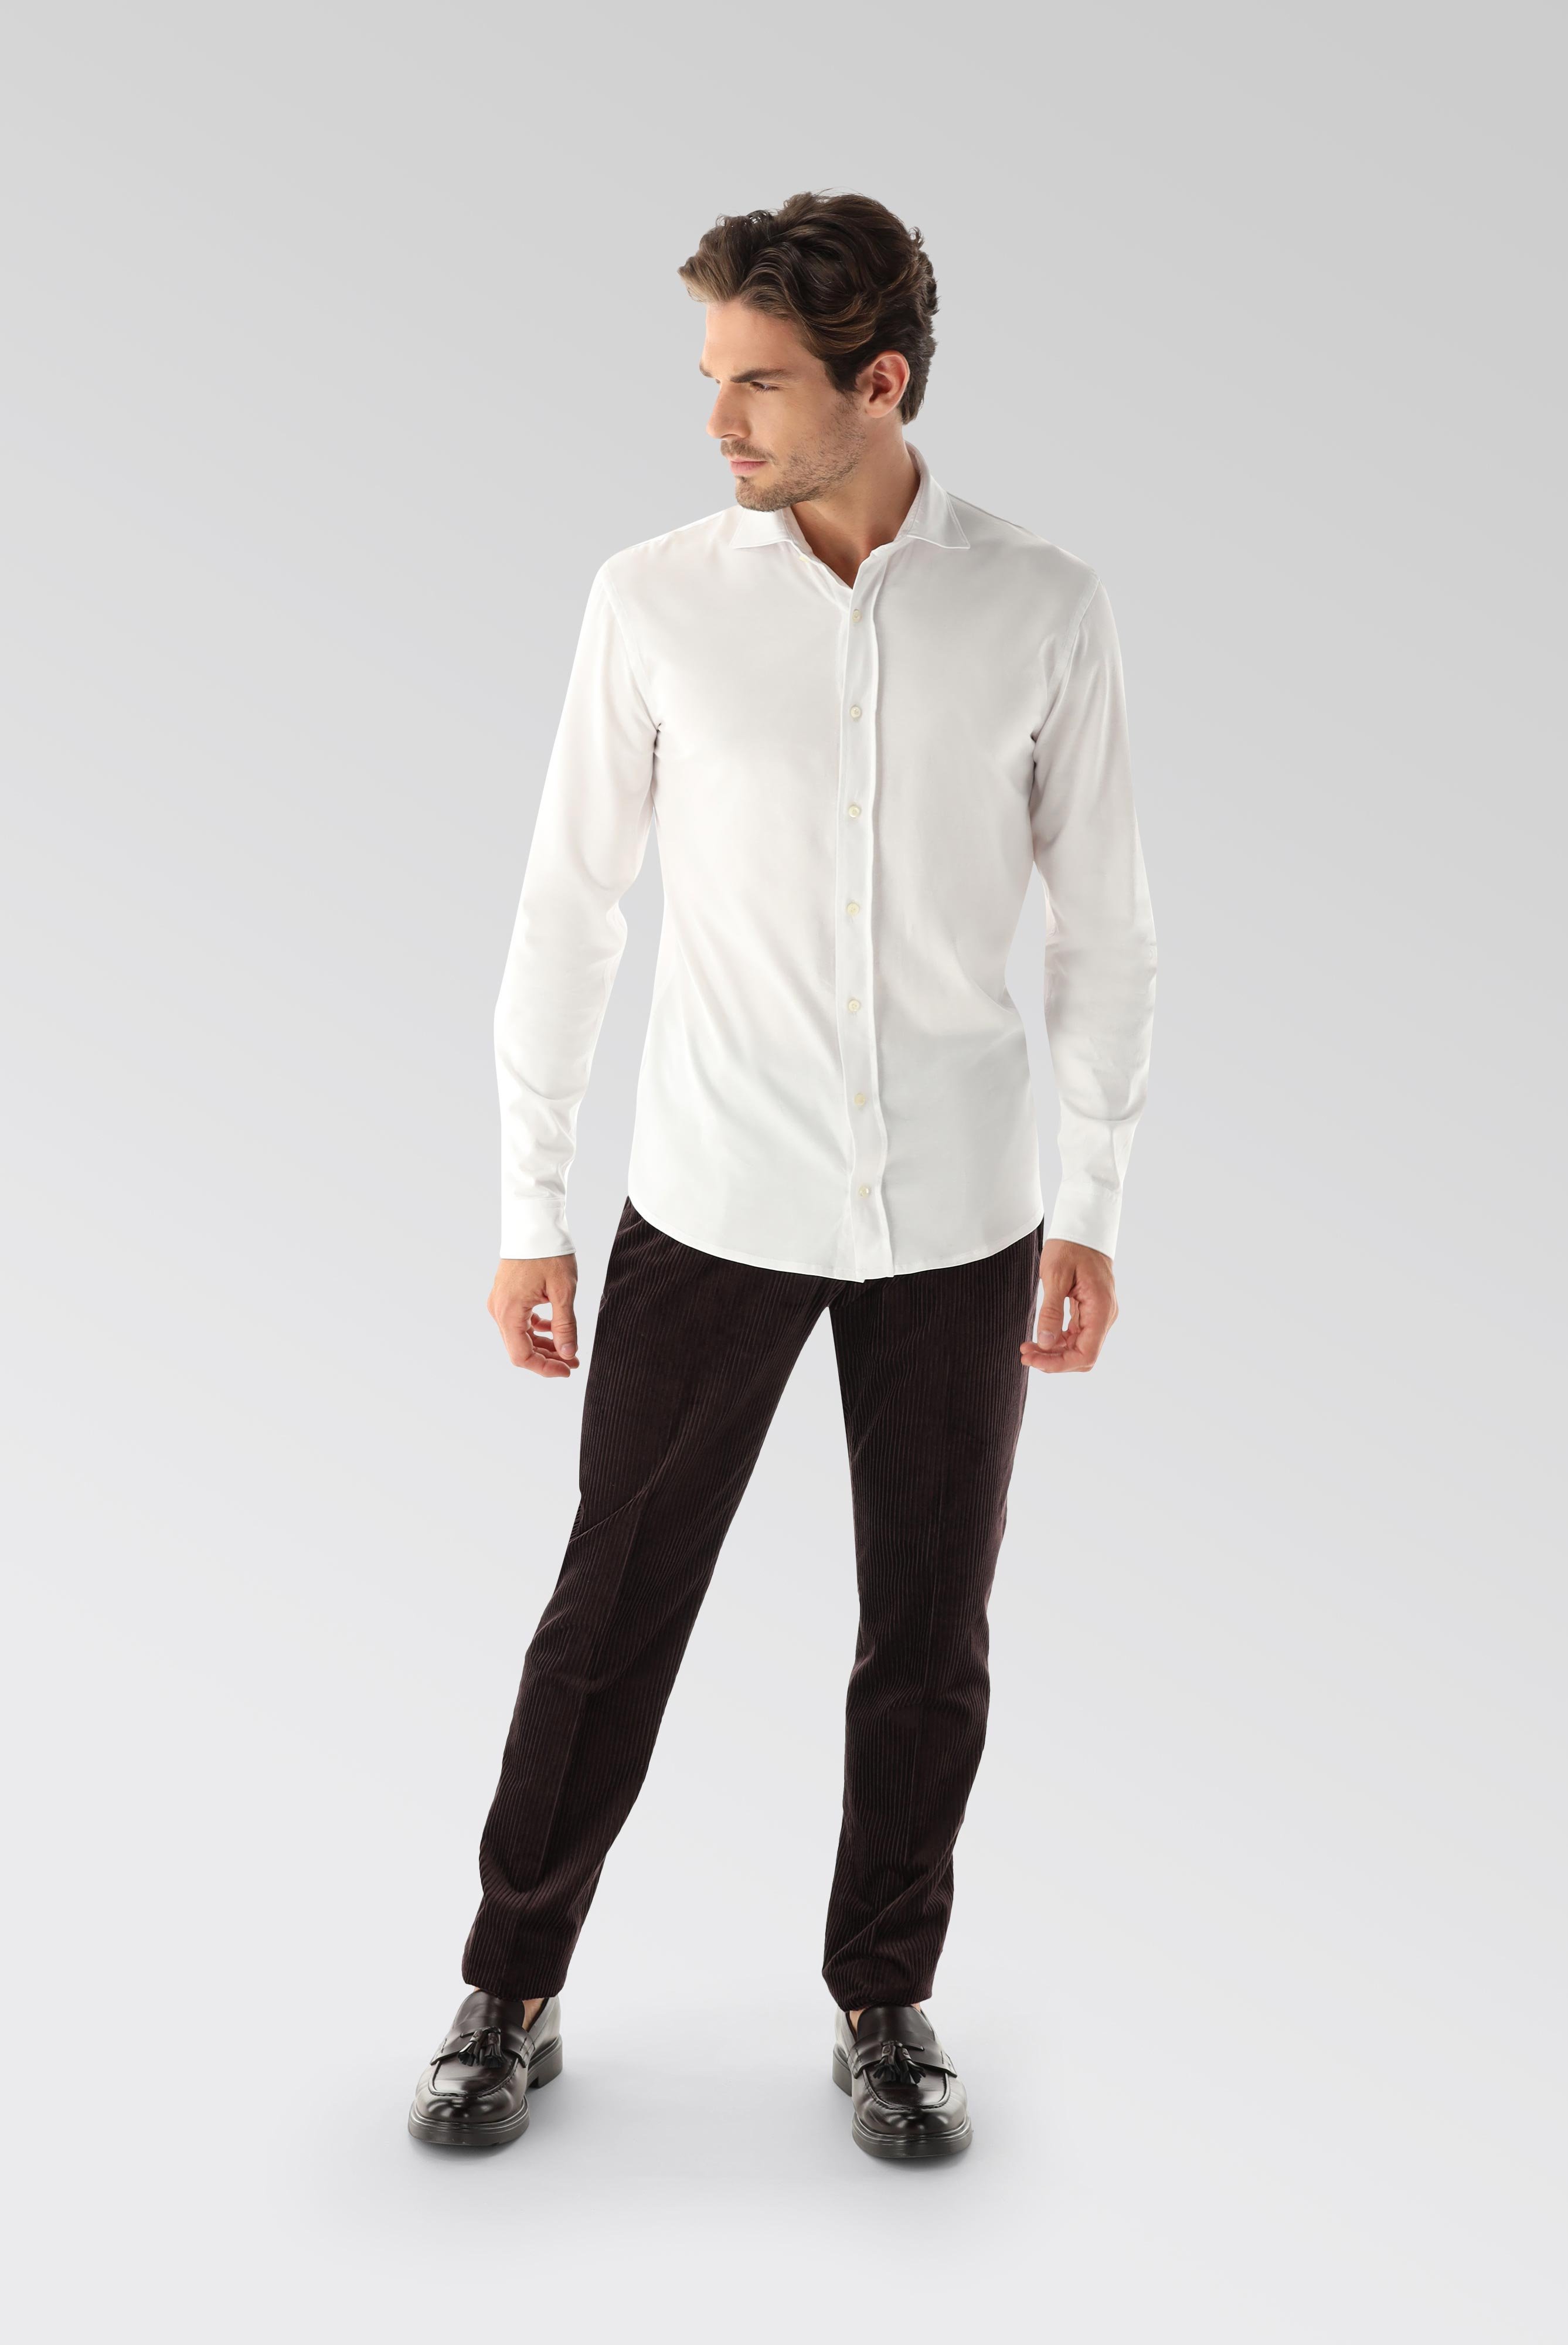 Jersey Hemden+Jersey Shirt Urban Look Slim Fit+20.1651.UC.Z20044.000.L